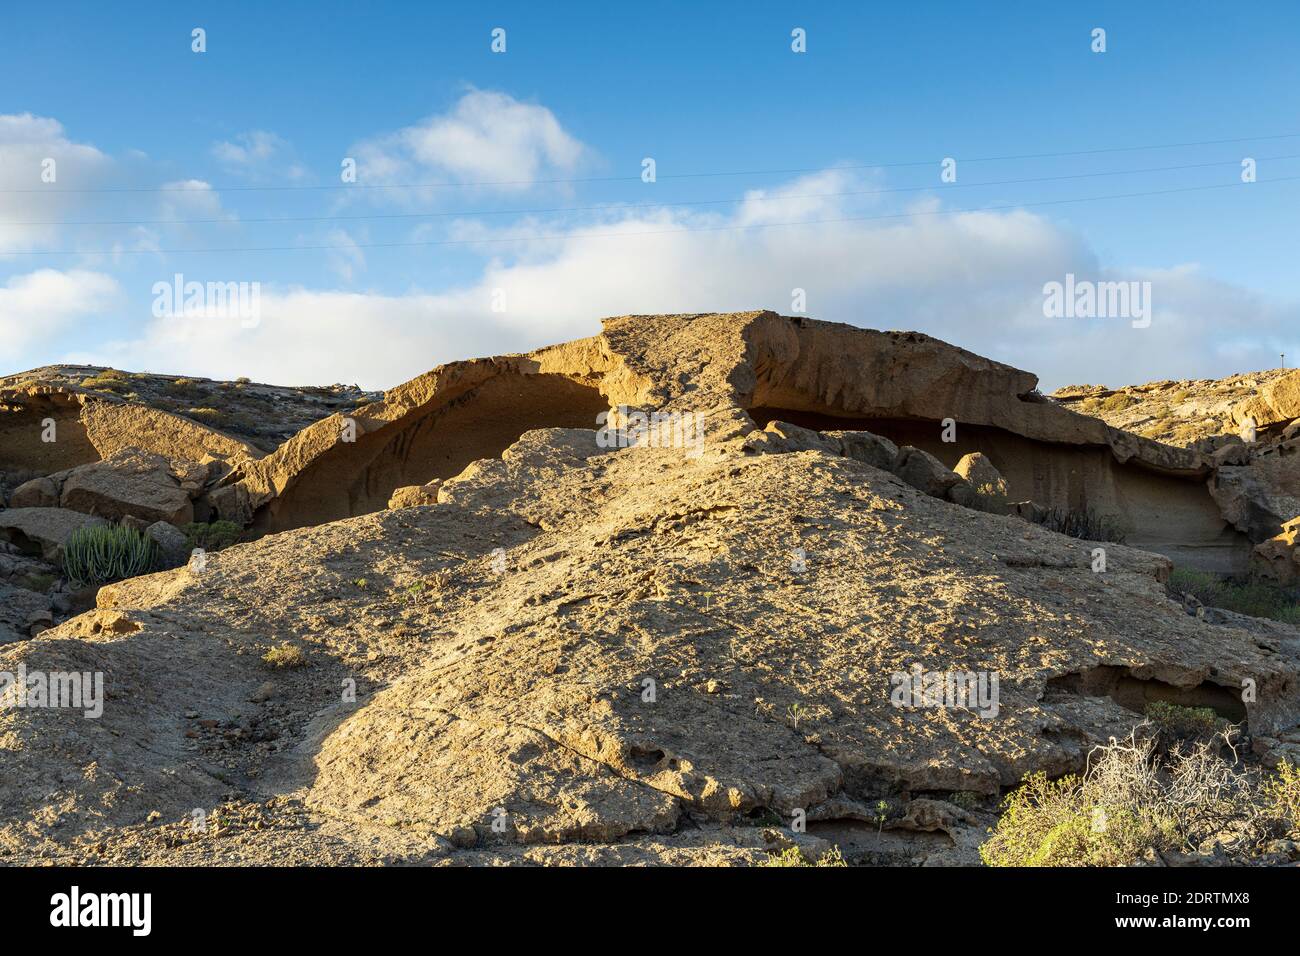 Arche de Tajao, paysage volcanique, dépôts pyroclastiques, formés par effondrement et érosion, Tajao, Ténérife, îles Canaries, Espagne Banque D'Images